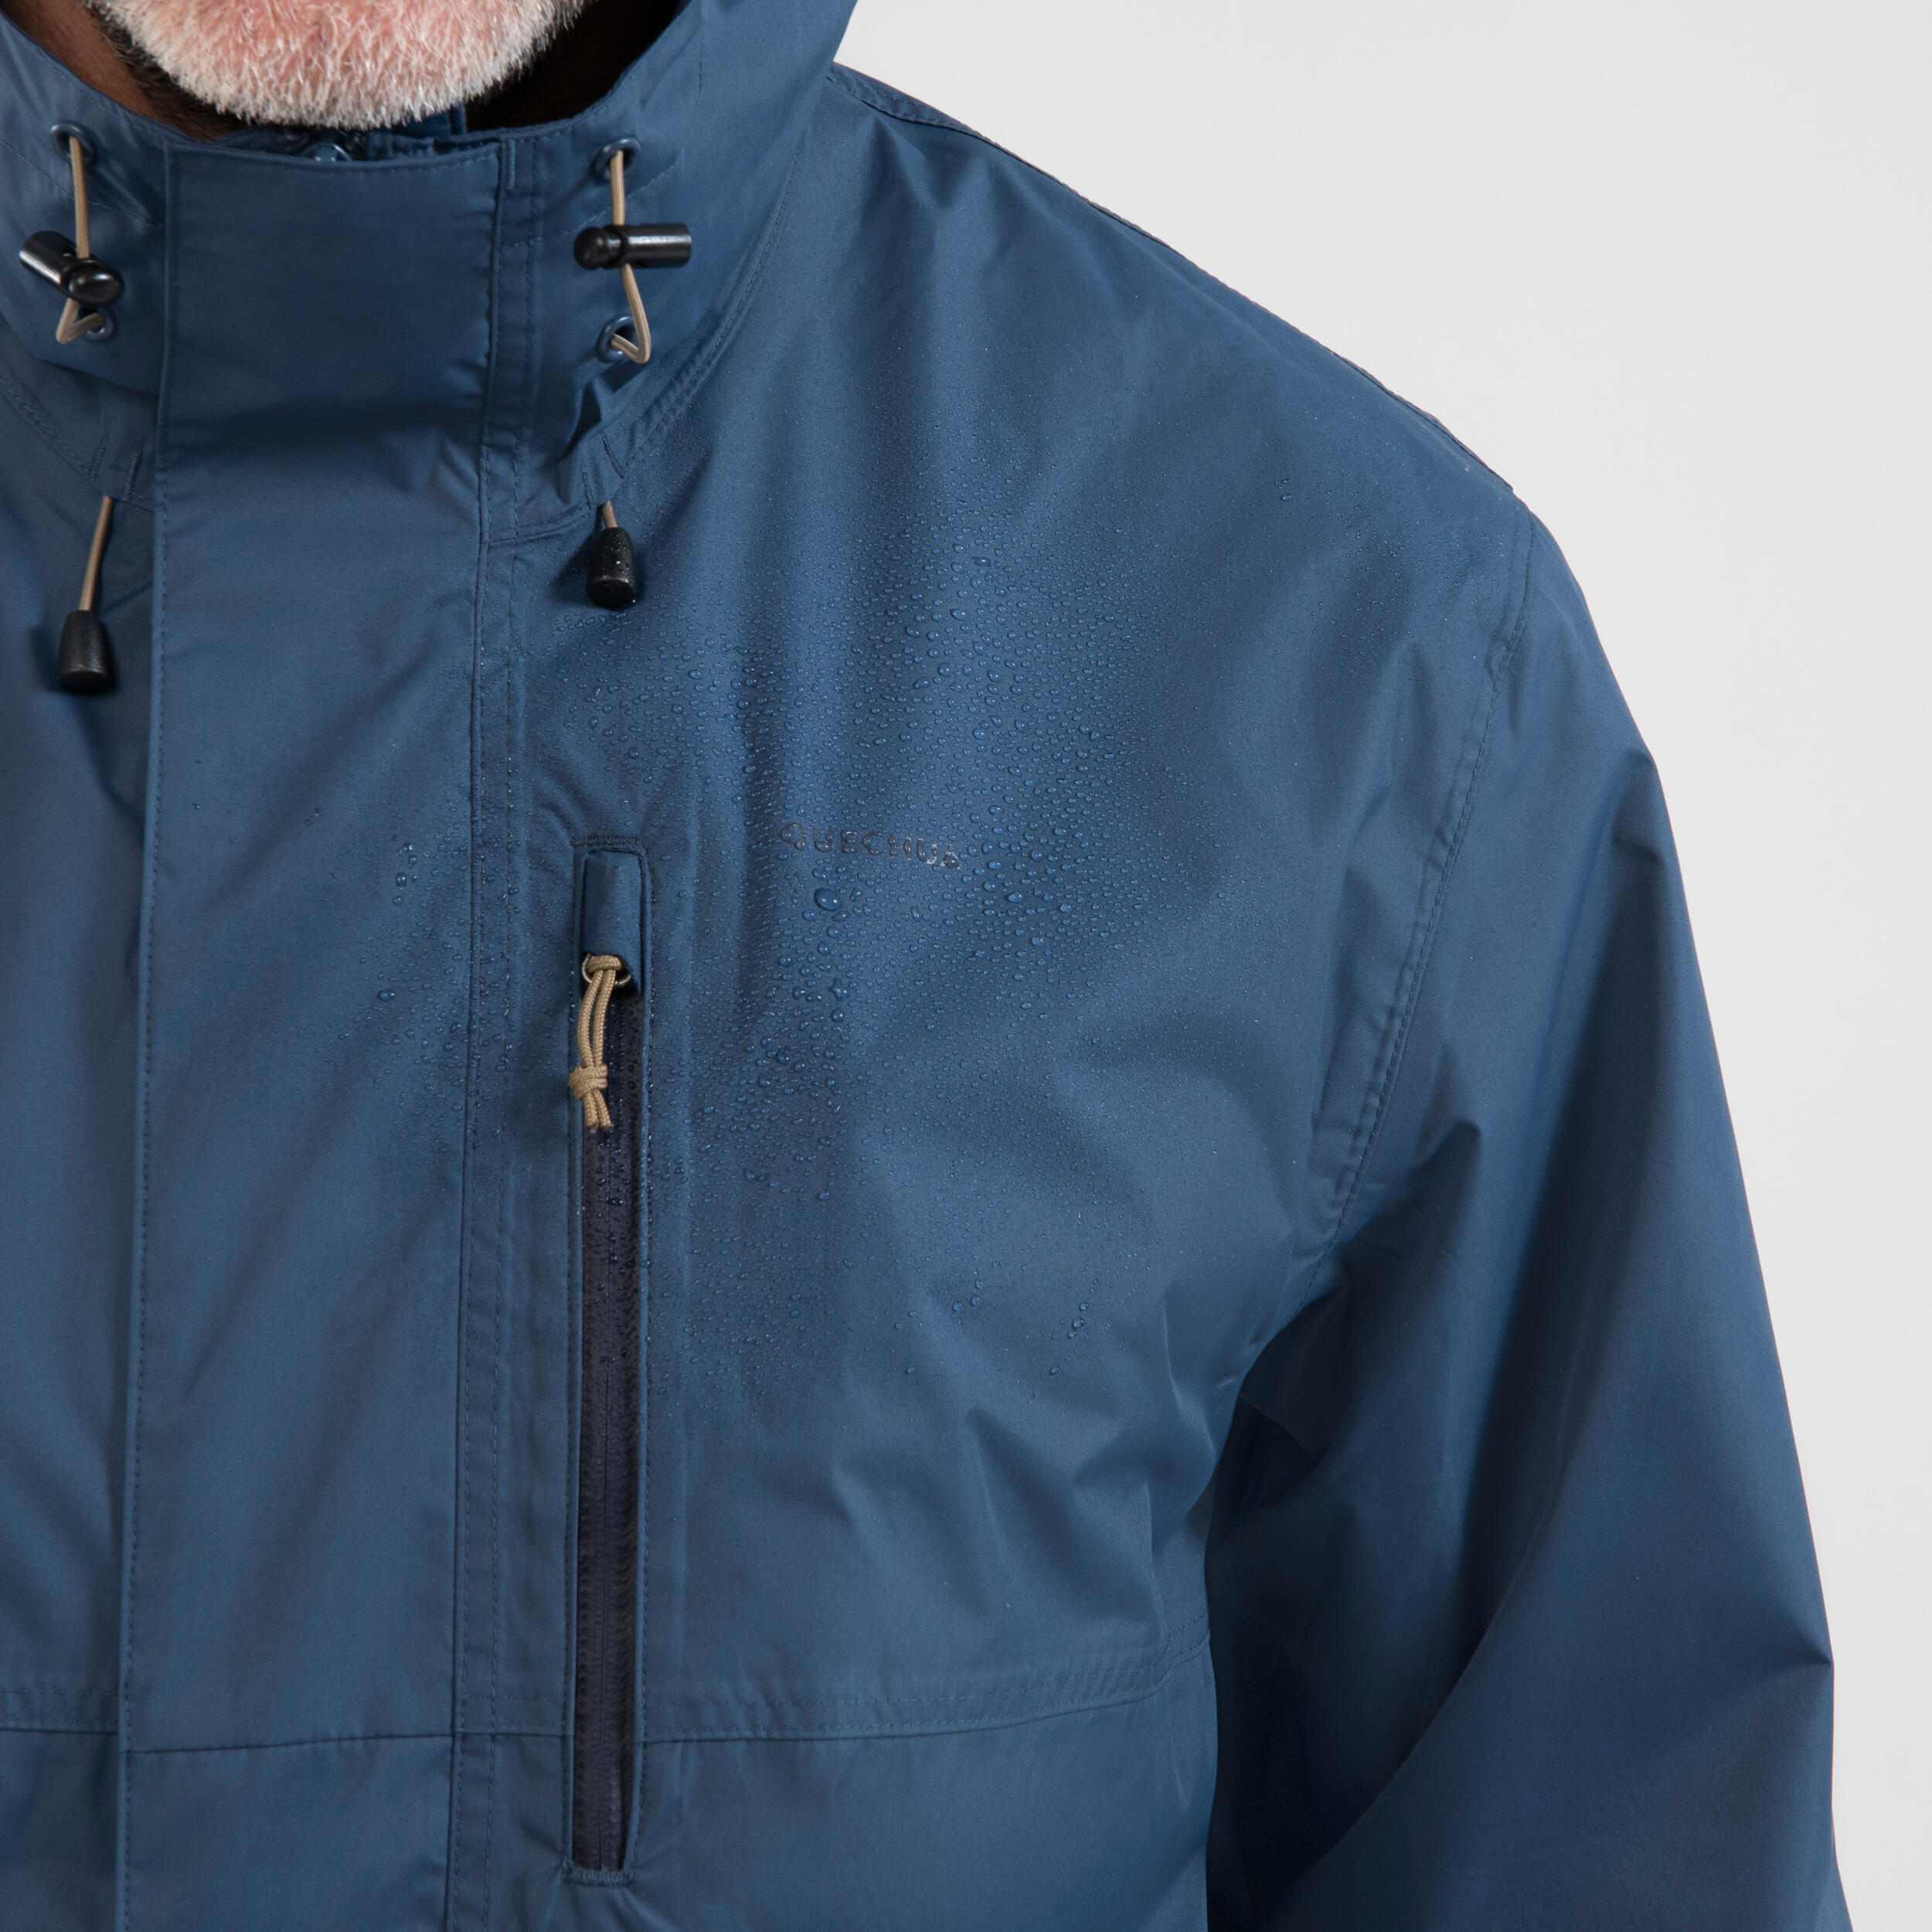 Manteau de randonnée imperméable homme – NH 500 bleu - QUECHUA